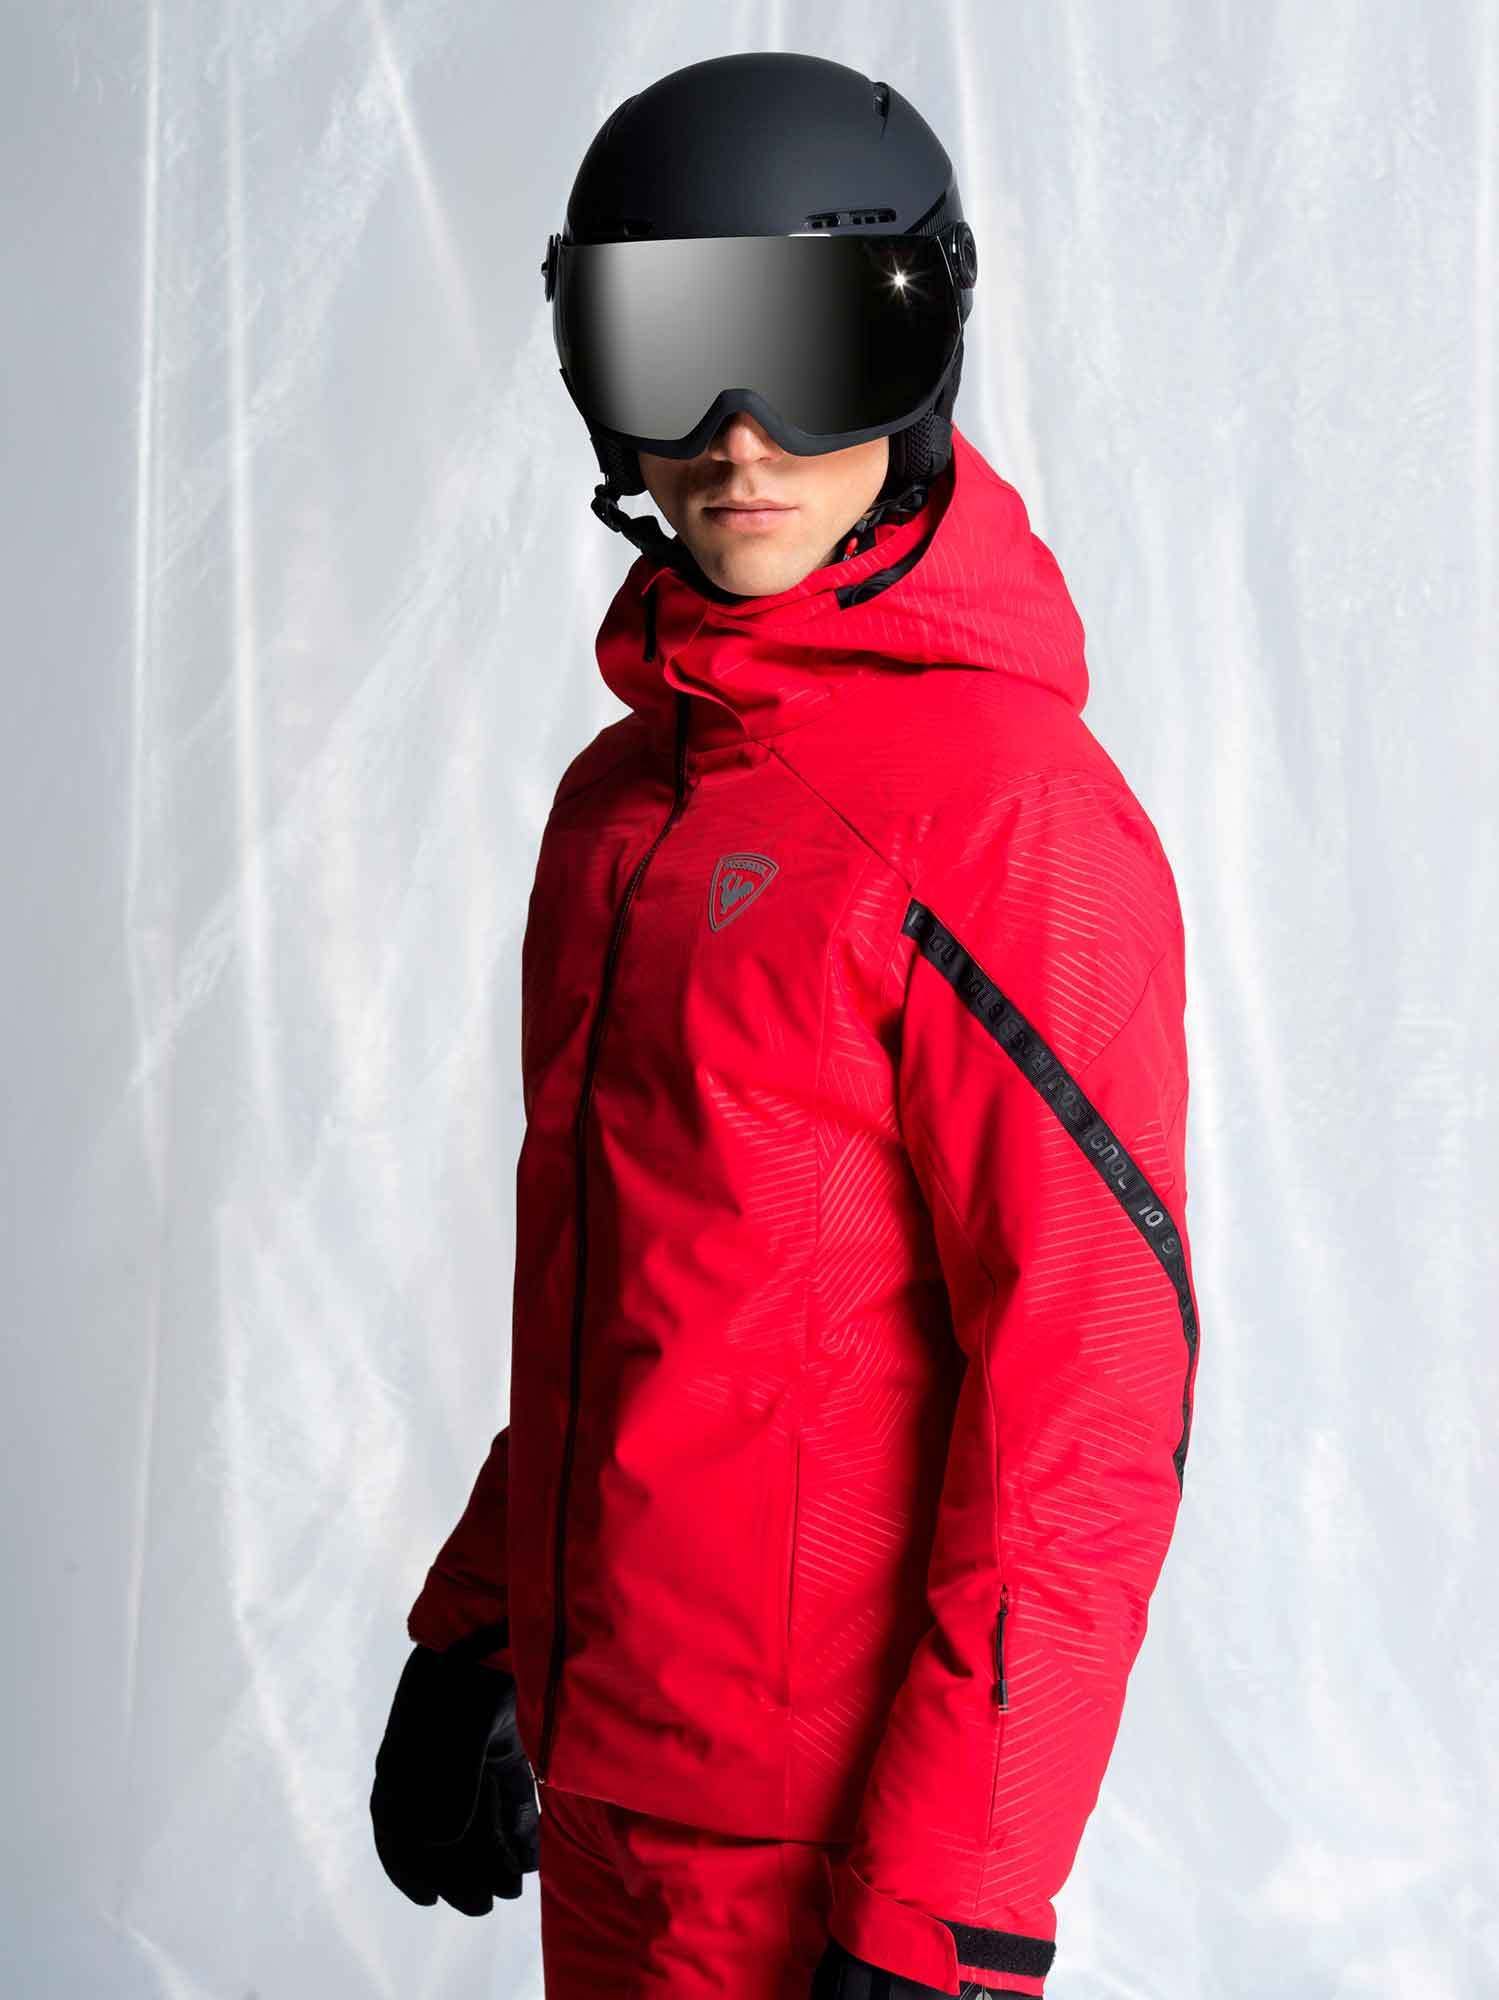 Rossignol Mens Gradian Ski Jacket – Medium – Red